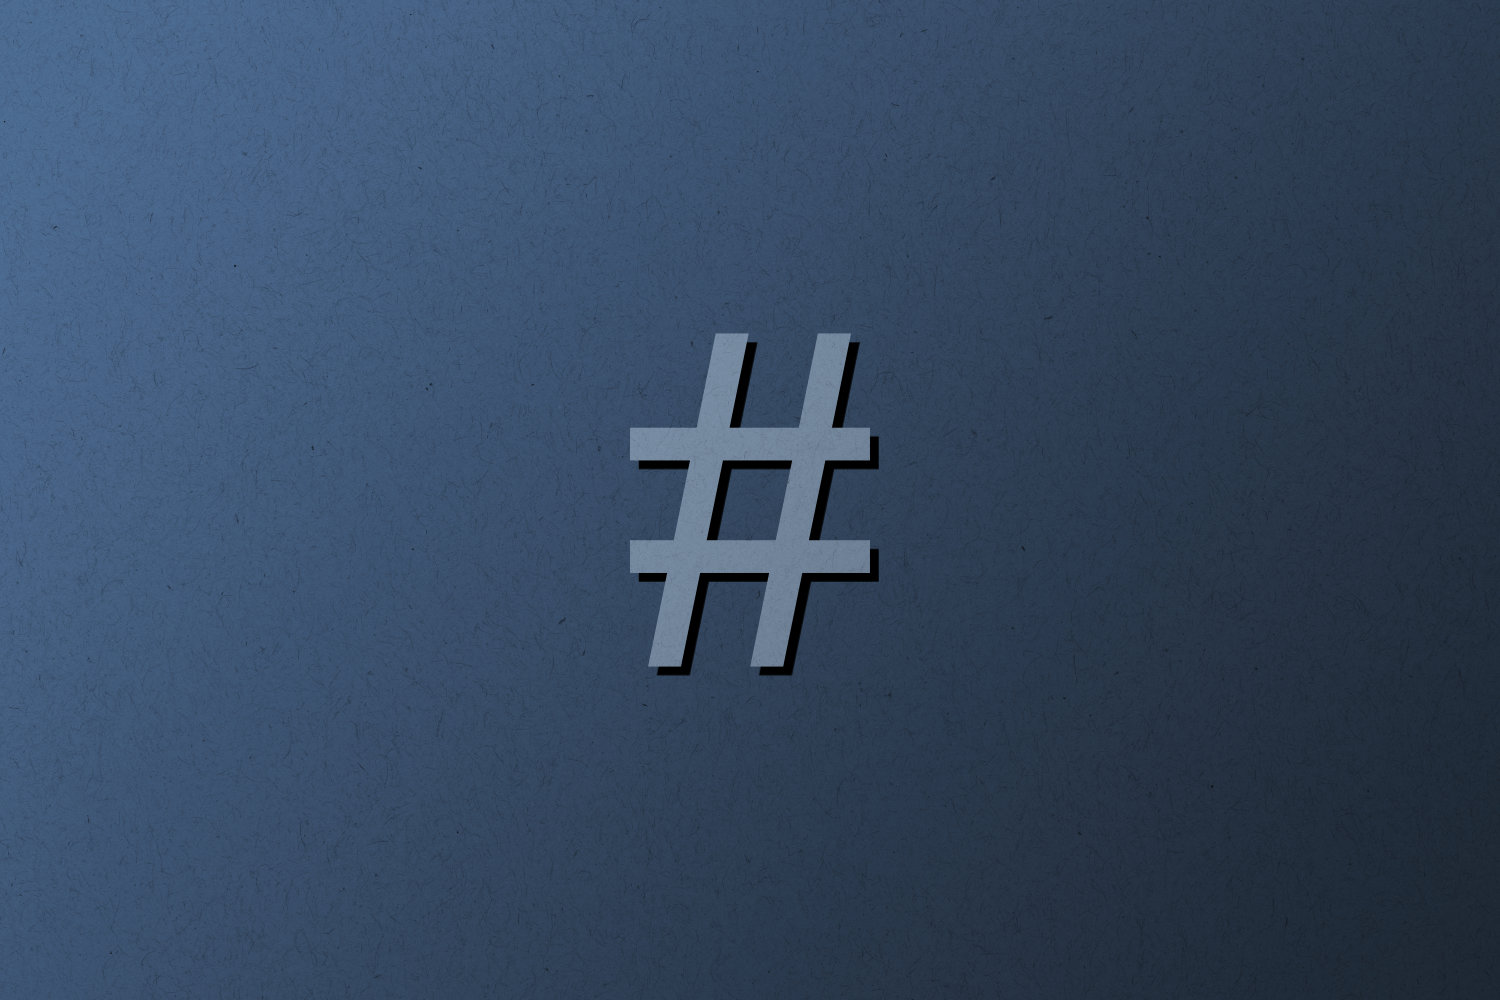 large hashtag on blue background